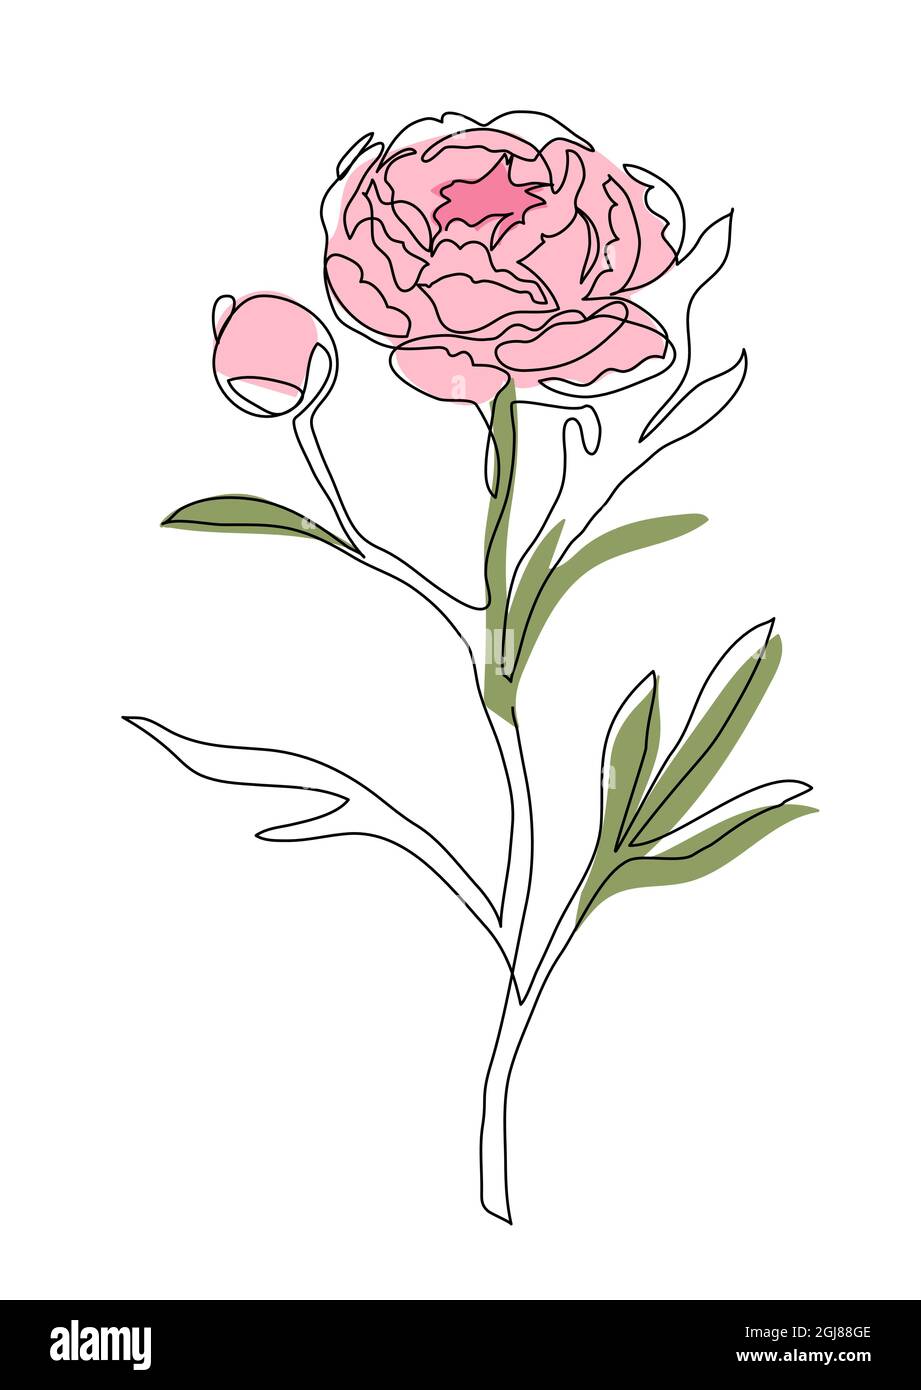 Motif vectoriel en ligne continue pour brunch aux fleurs de pivoine. Illustration d'une ligne représentant un brunch à la pivoine rose Illustration de Vecteur